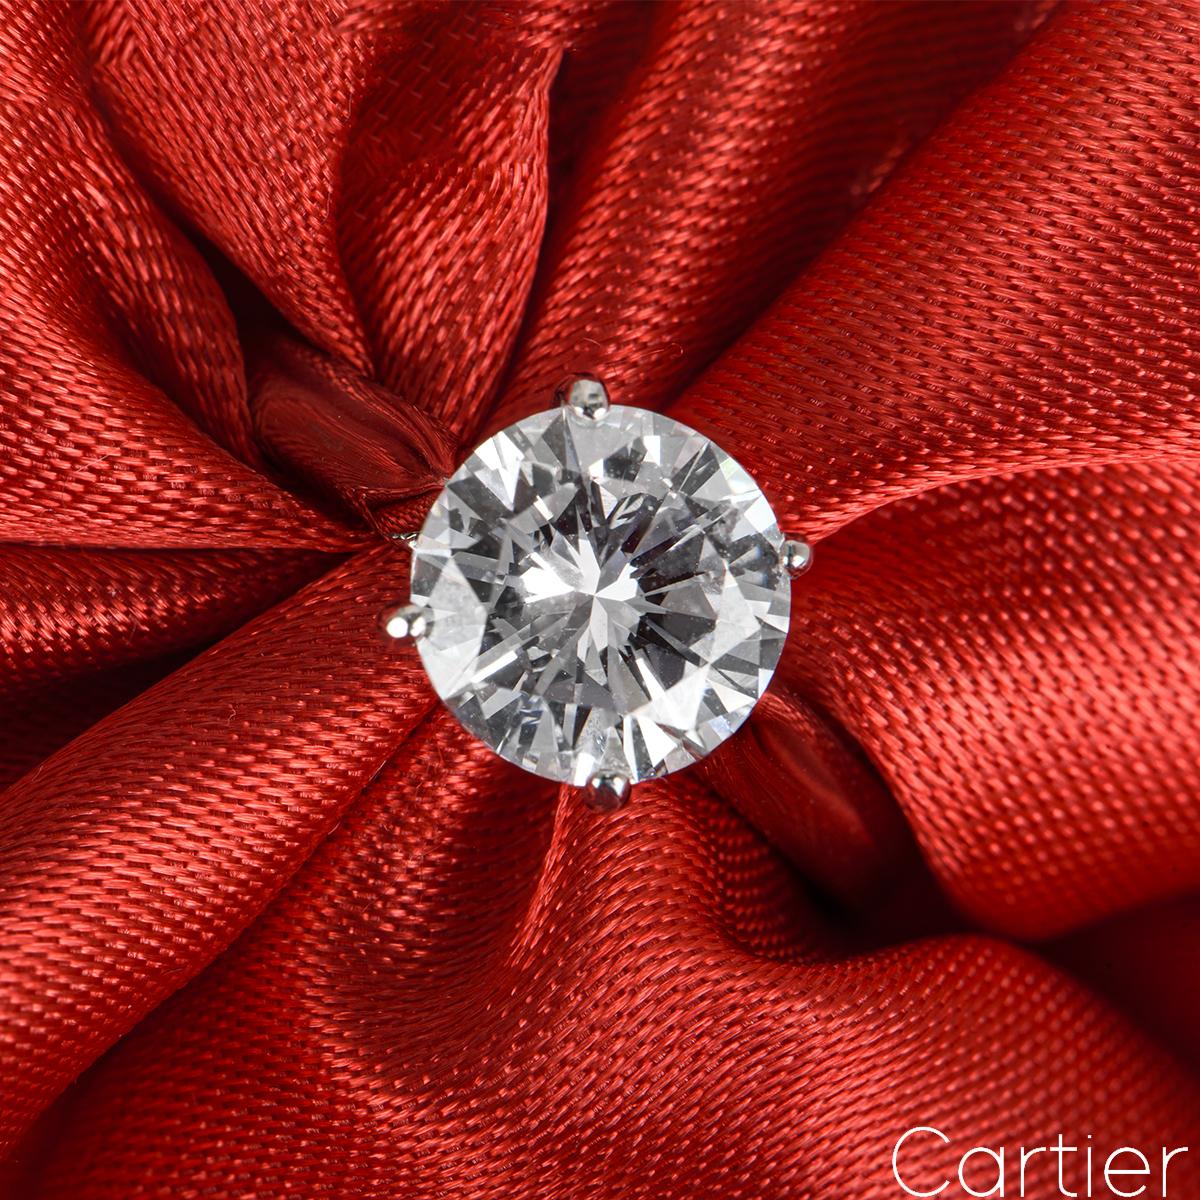 Une superbe bague de fiançailles en platine et diamants de Cartier. La bague solitaire présente un diamant rond de taille brillant serti dans une monture classique à quatre griffes pesant 1,51ct, de couleur D et de pureté VVS2. La bague mesure 2,5